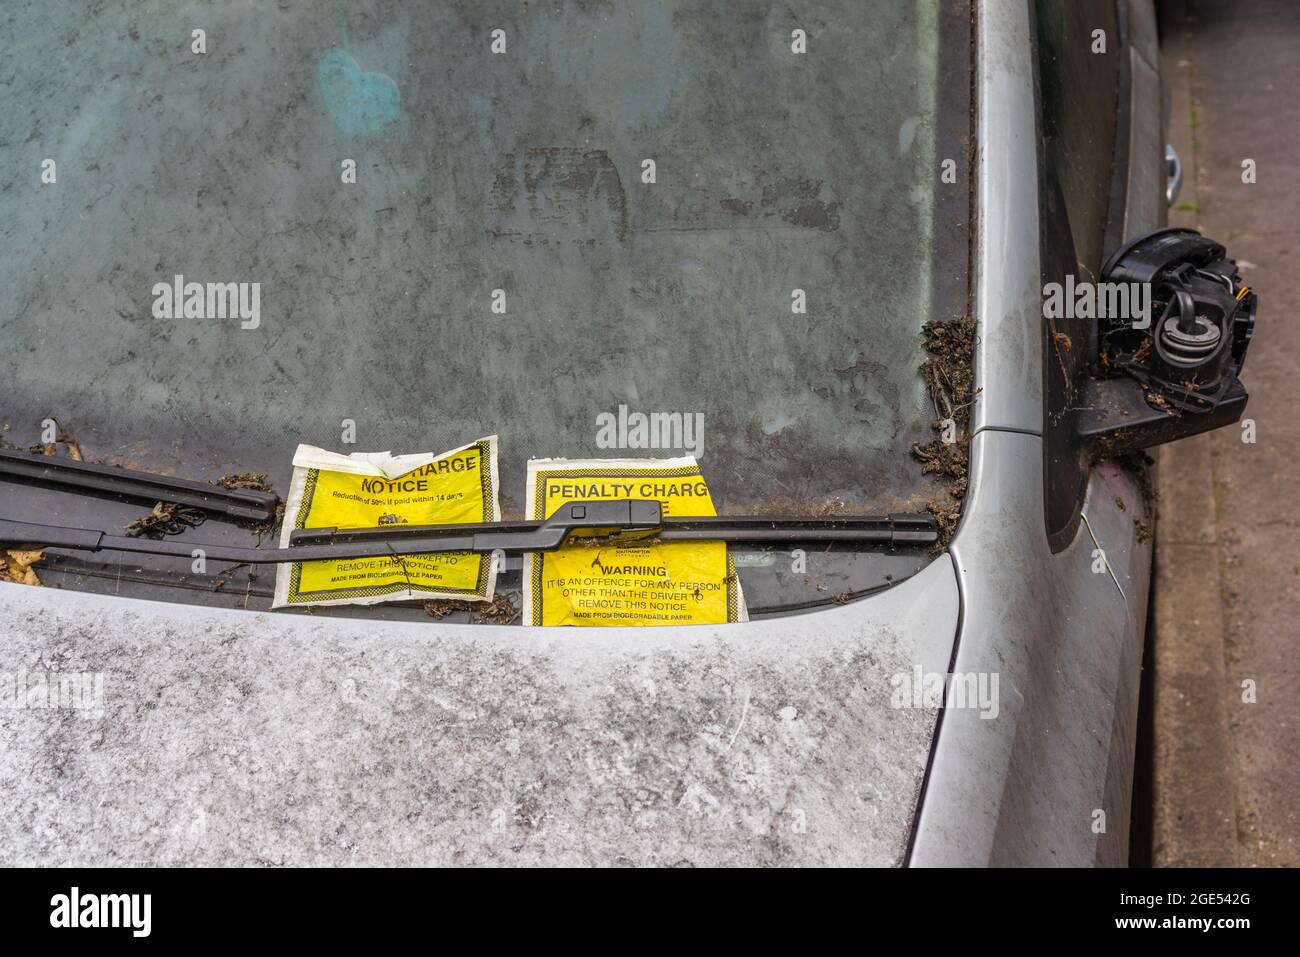 Verlassene Autos mit zwei Entgeltanzeigen an einer schmutzigen Windschutzscheibe, England, Großbritannien Stockfoto